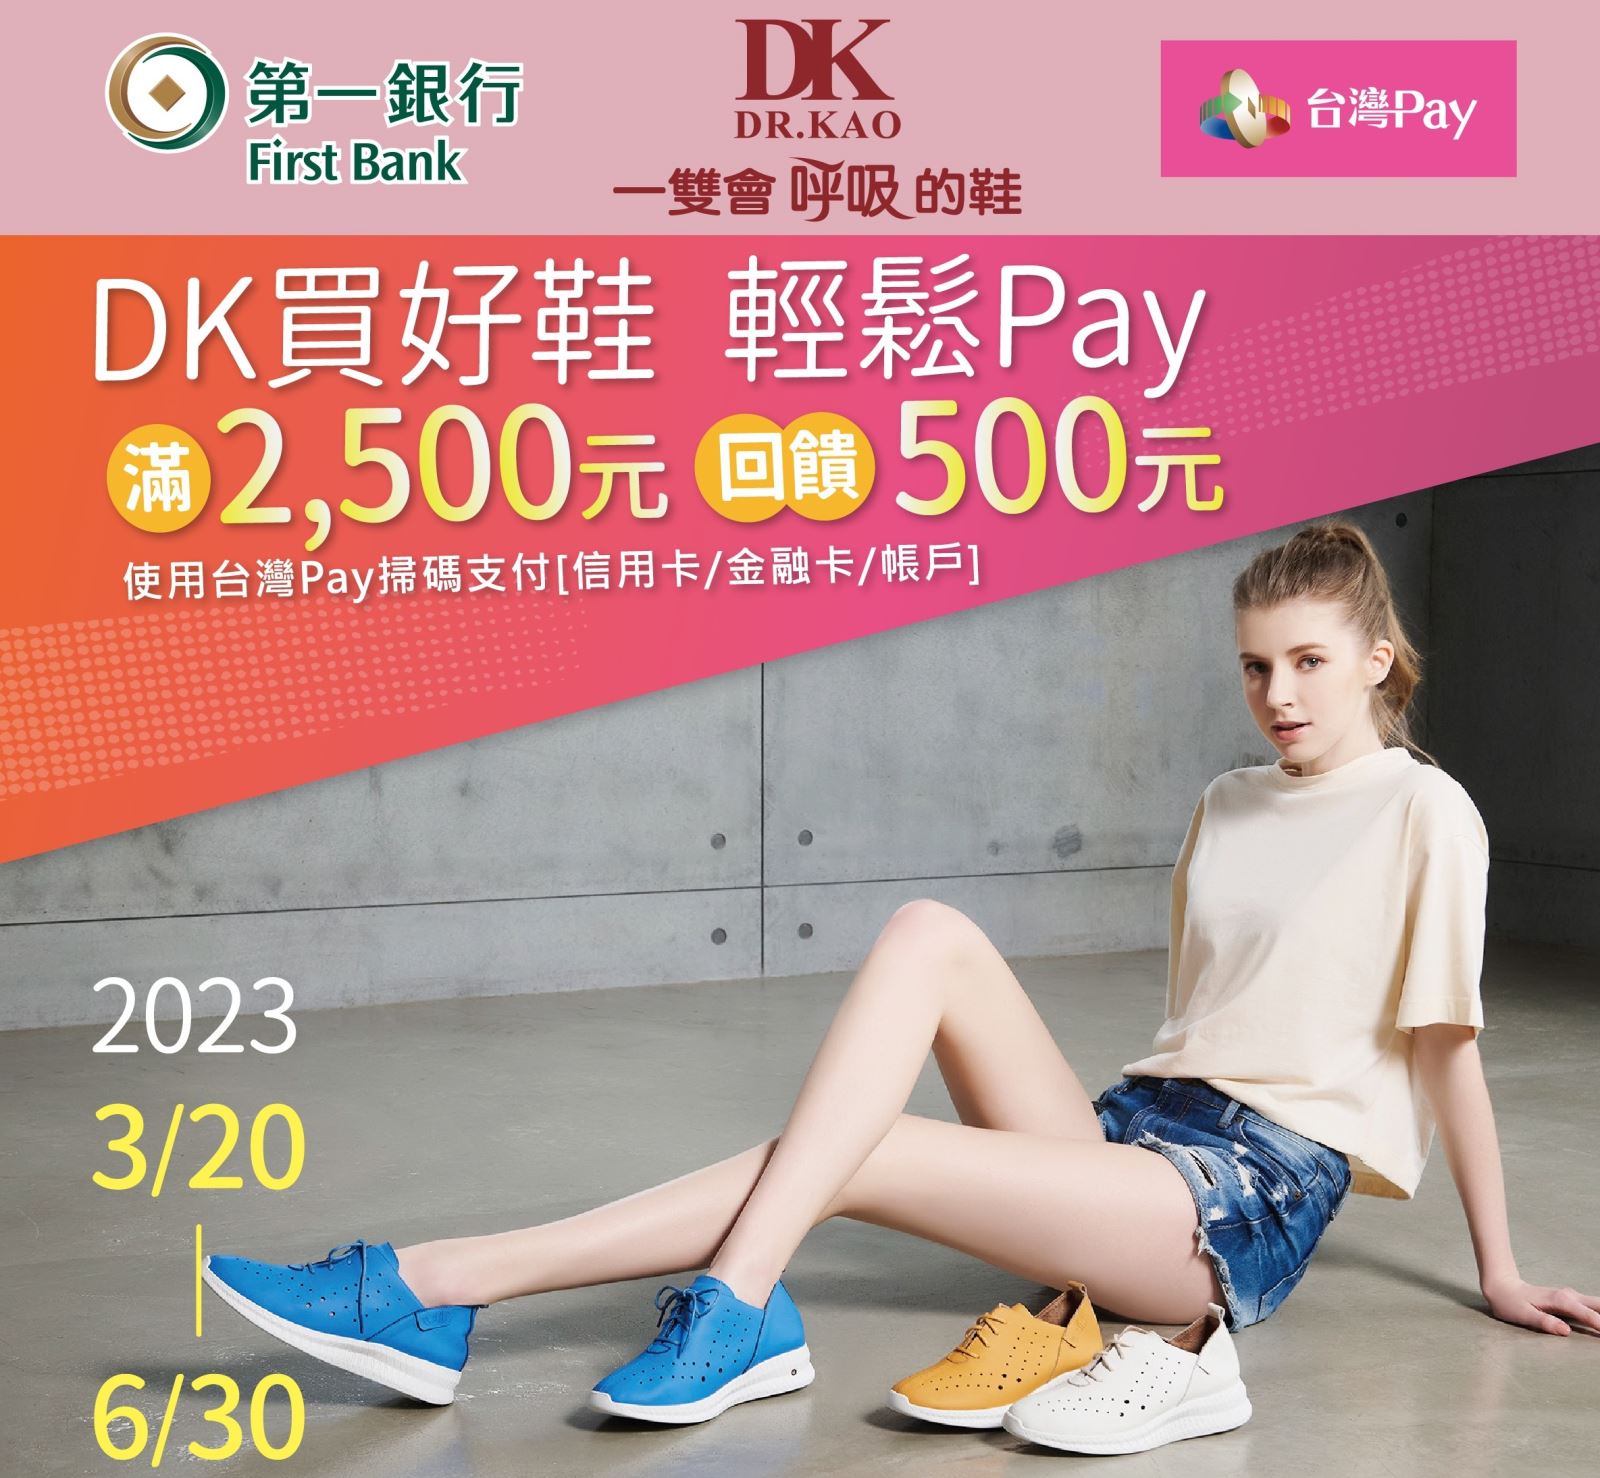 活動期間於活動地點使用「台灣 Pay」QR Code 掃碼進行支付，單筆消費金額滿新臺幣2,500 元以上，可享 500 元現金回饋，活動期間每一金融卡/帳戶/信用卡最高回饋上限為 1,000 元。